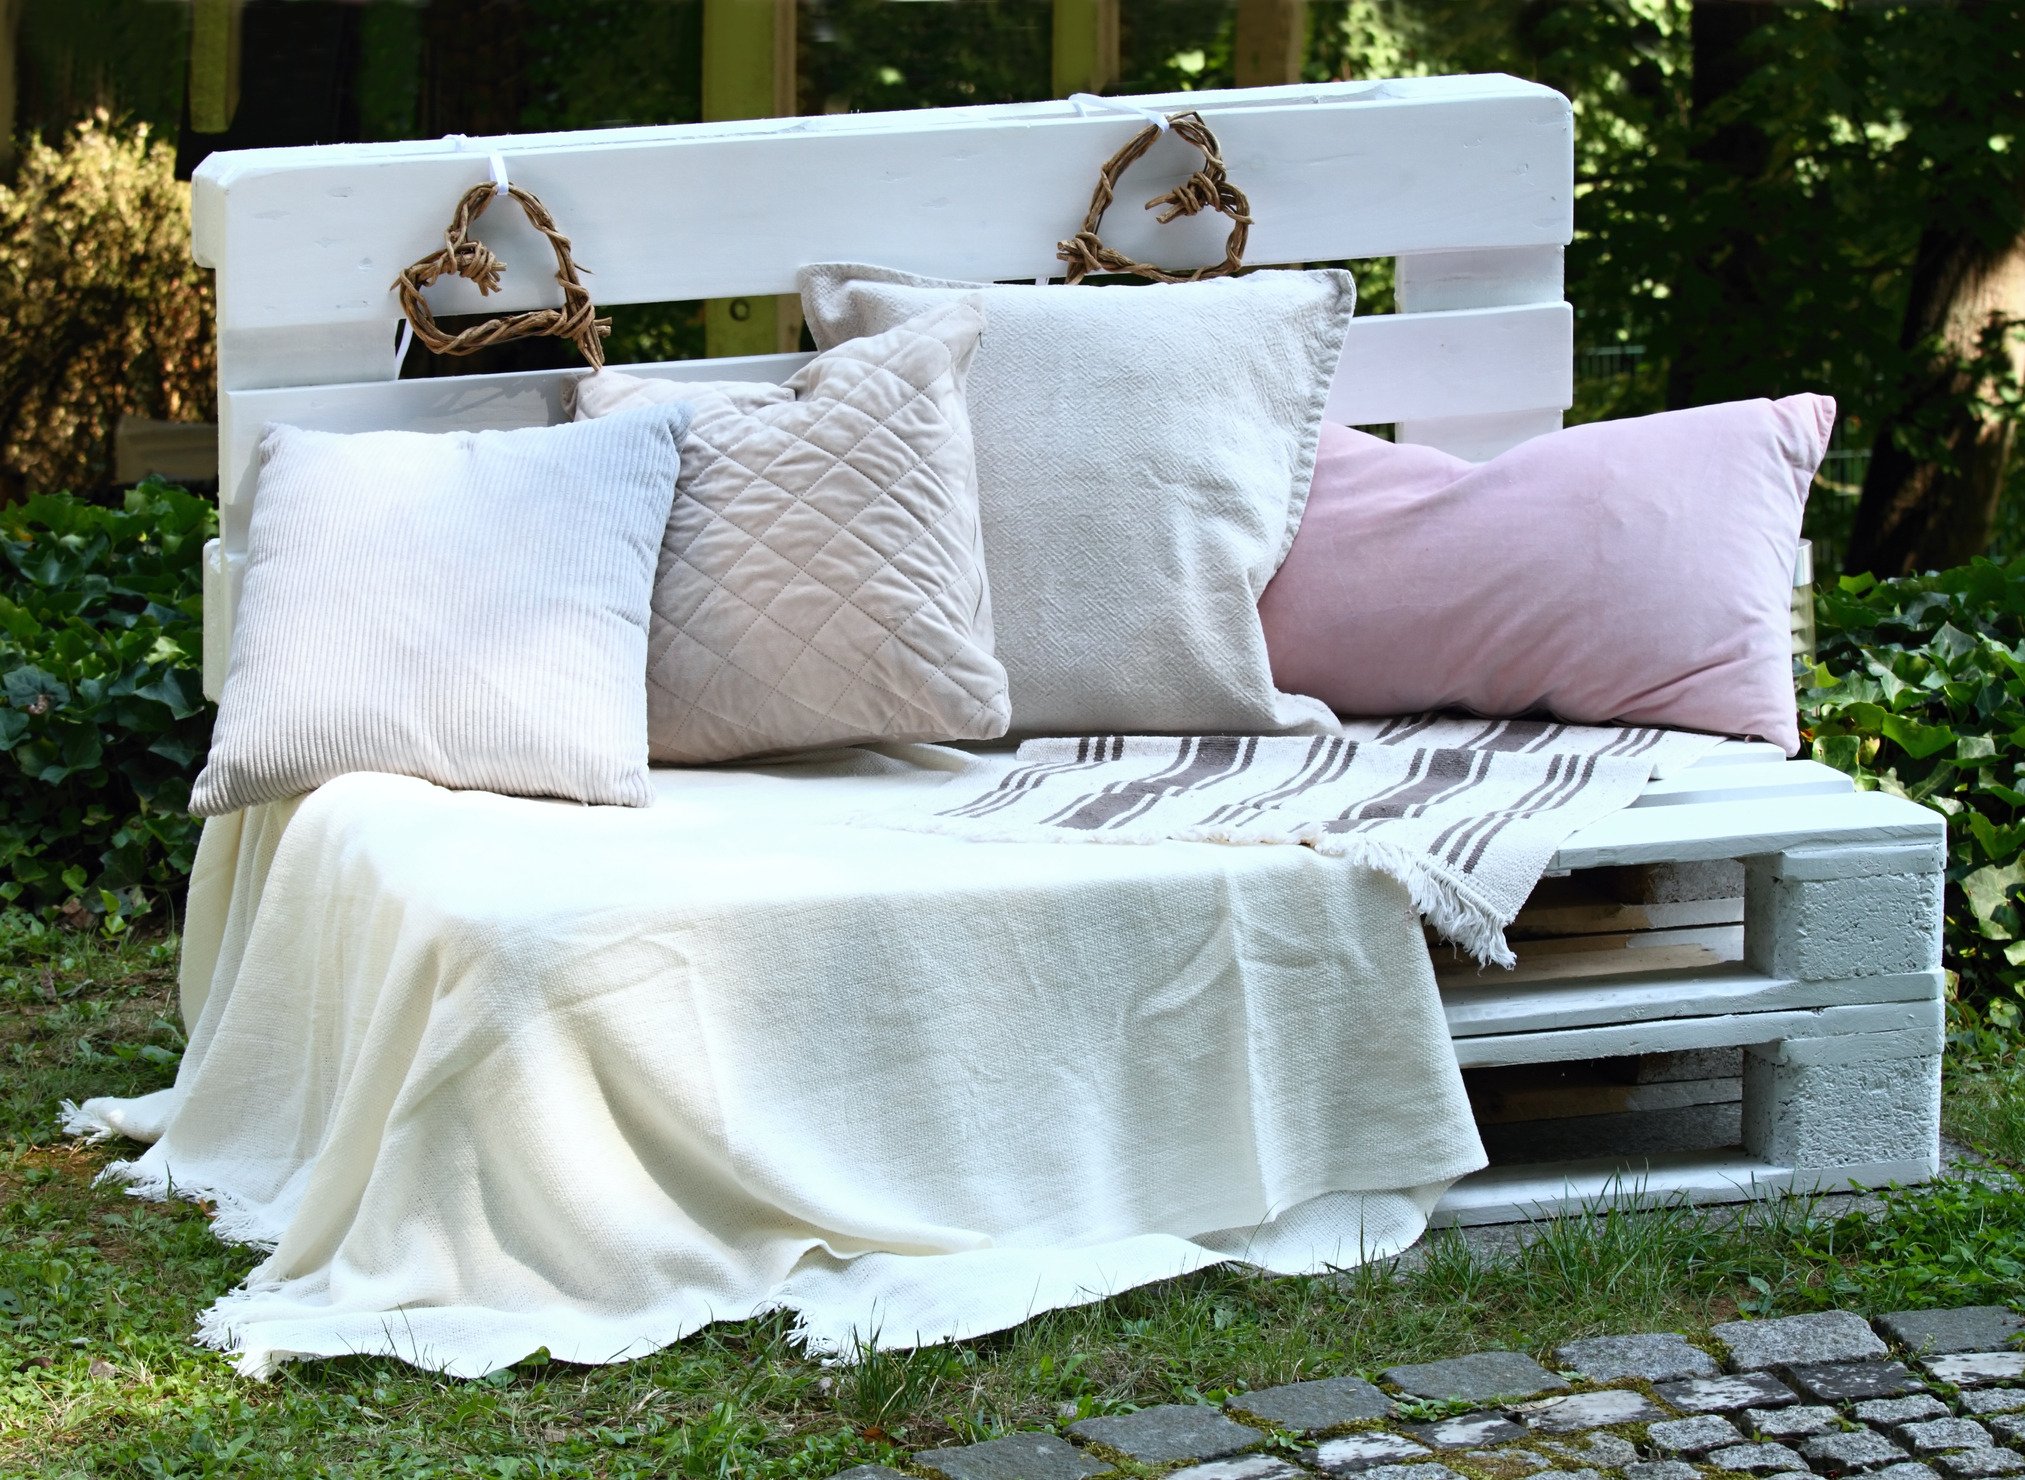 White garden bench  with blankets